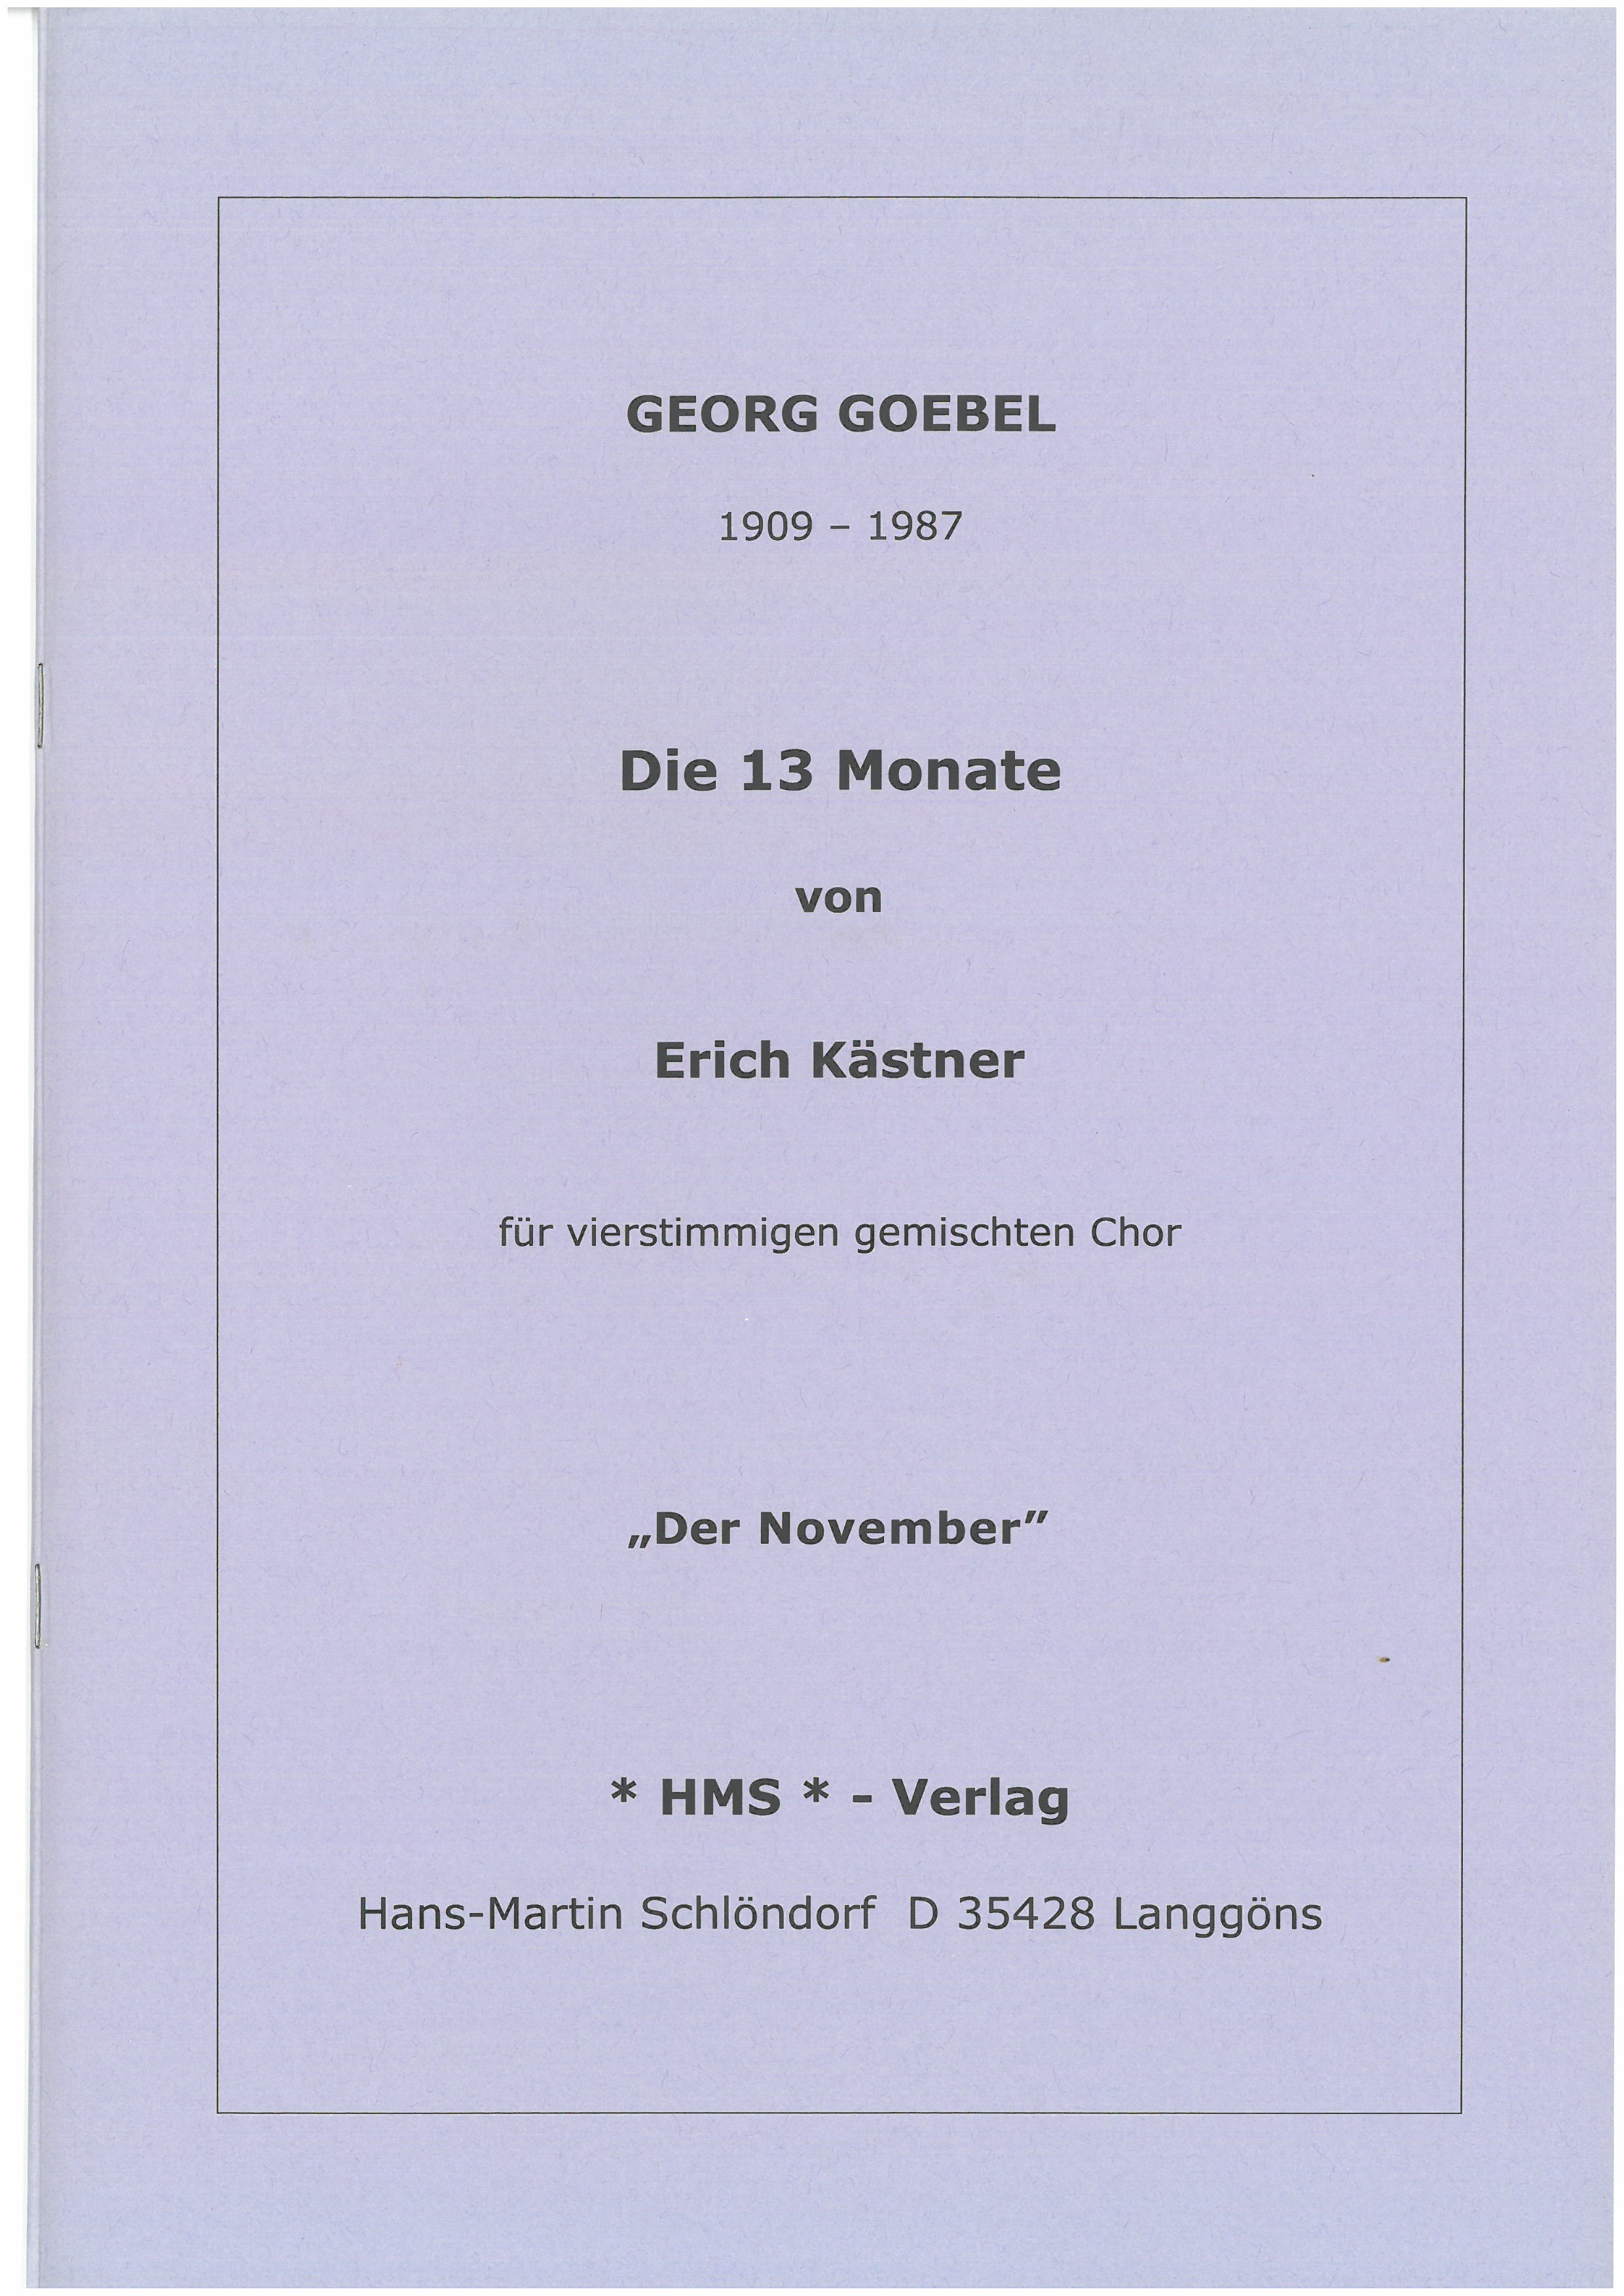 November aus dem Chorzyklus 13 Monate - nach Erich Kästner